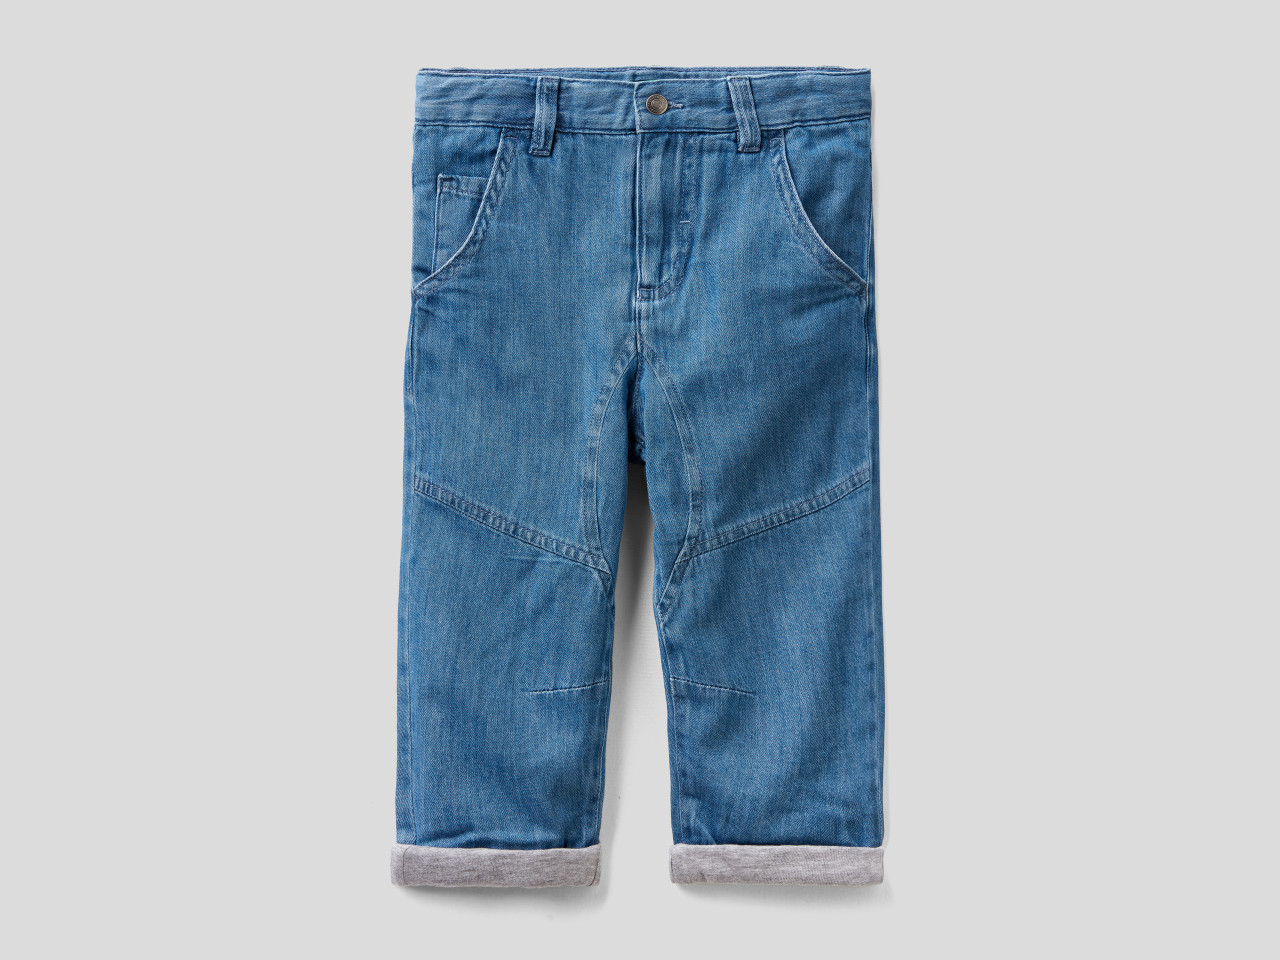 Komos Bermuda Bimbo Pantaloncino Jeans Pantalone Corto da 4 Anni a 16 Anni Strappi 